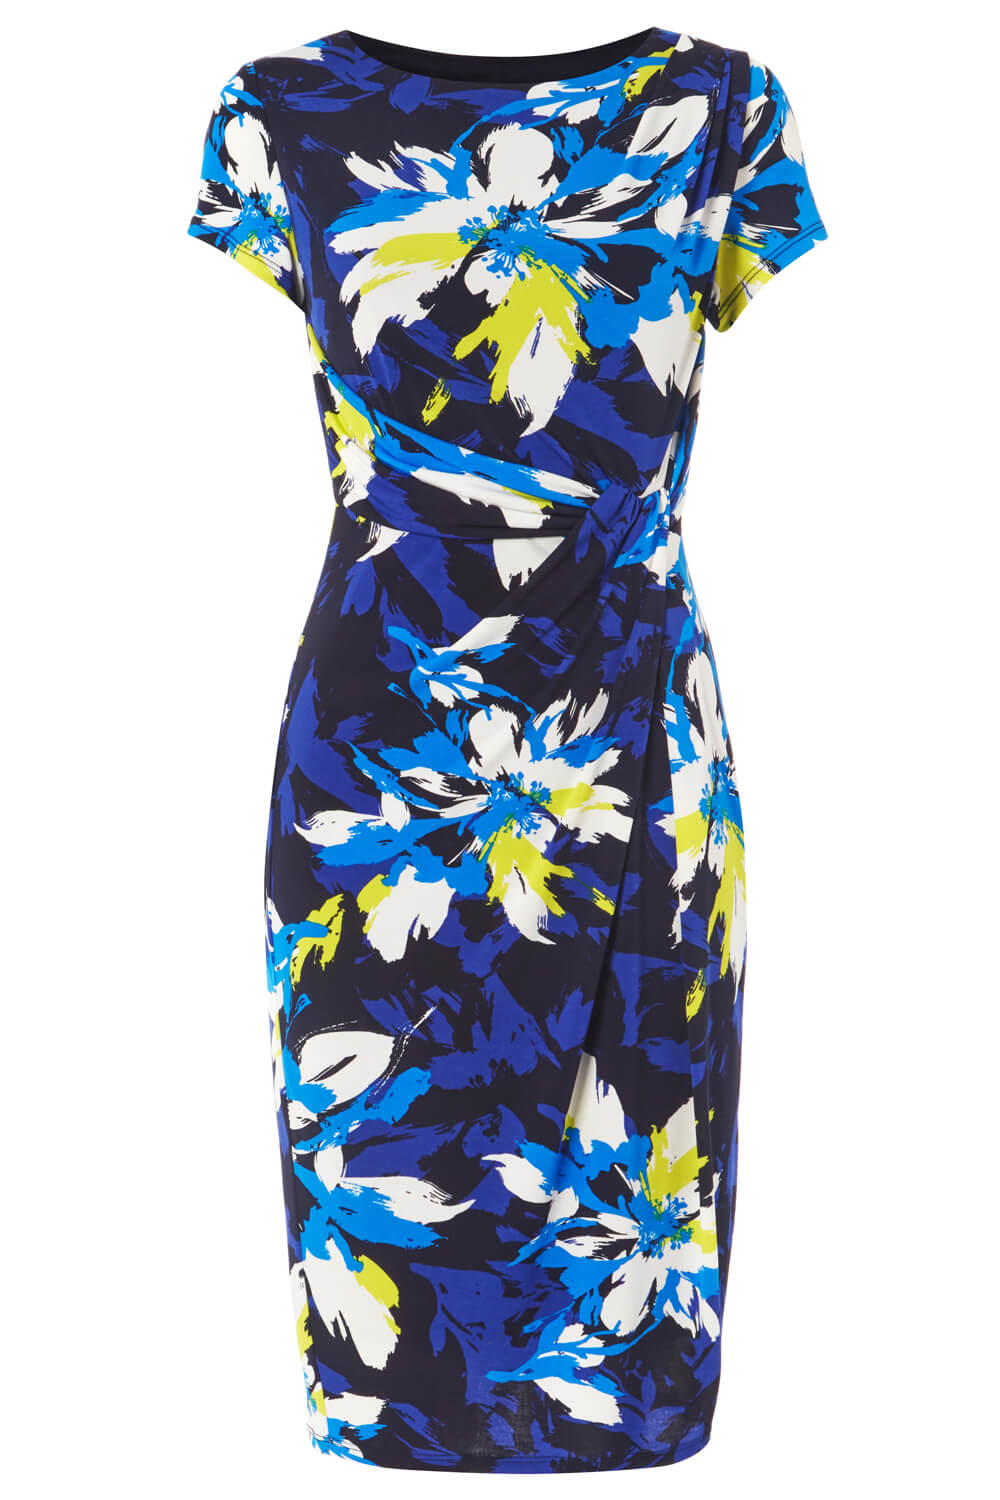 Royal Blue Floral Print Side Twist Dress, Image 5 of 5